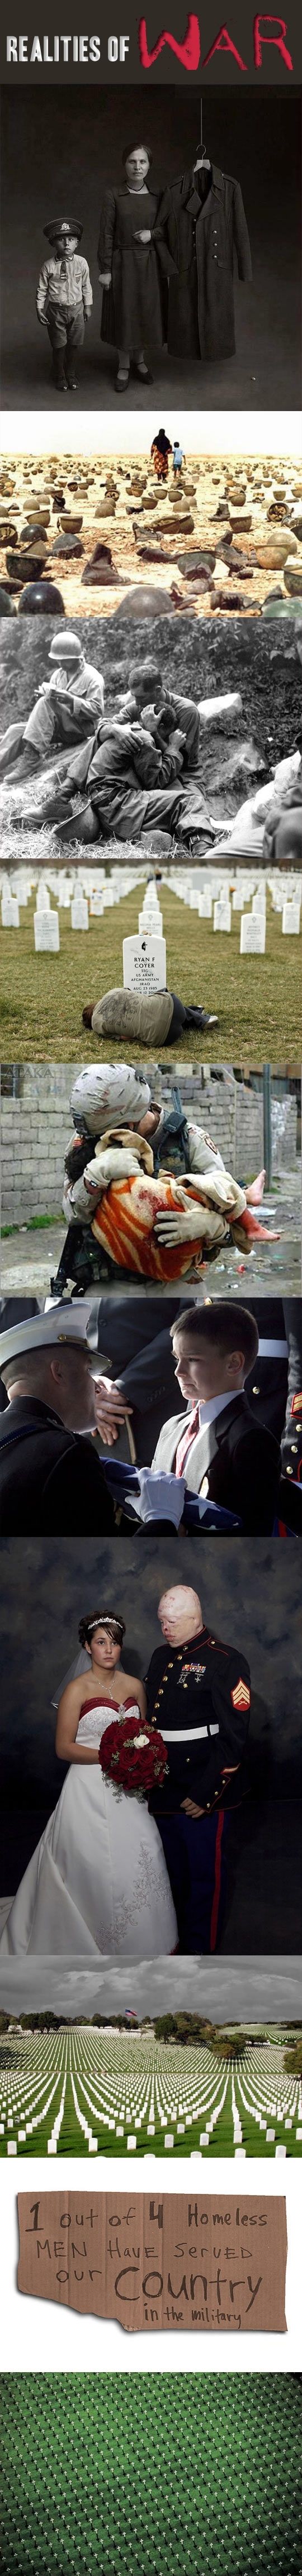 Realities of War.